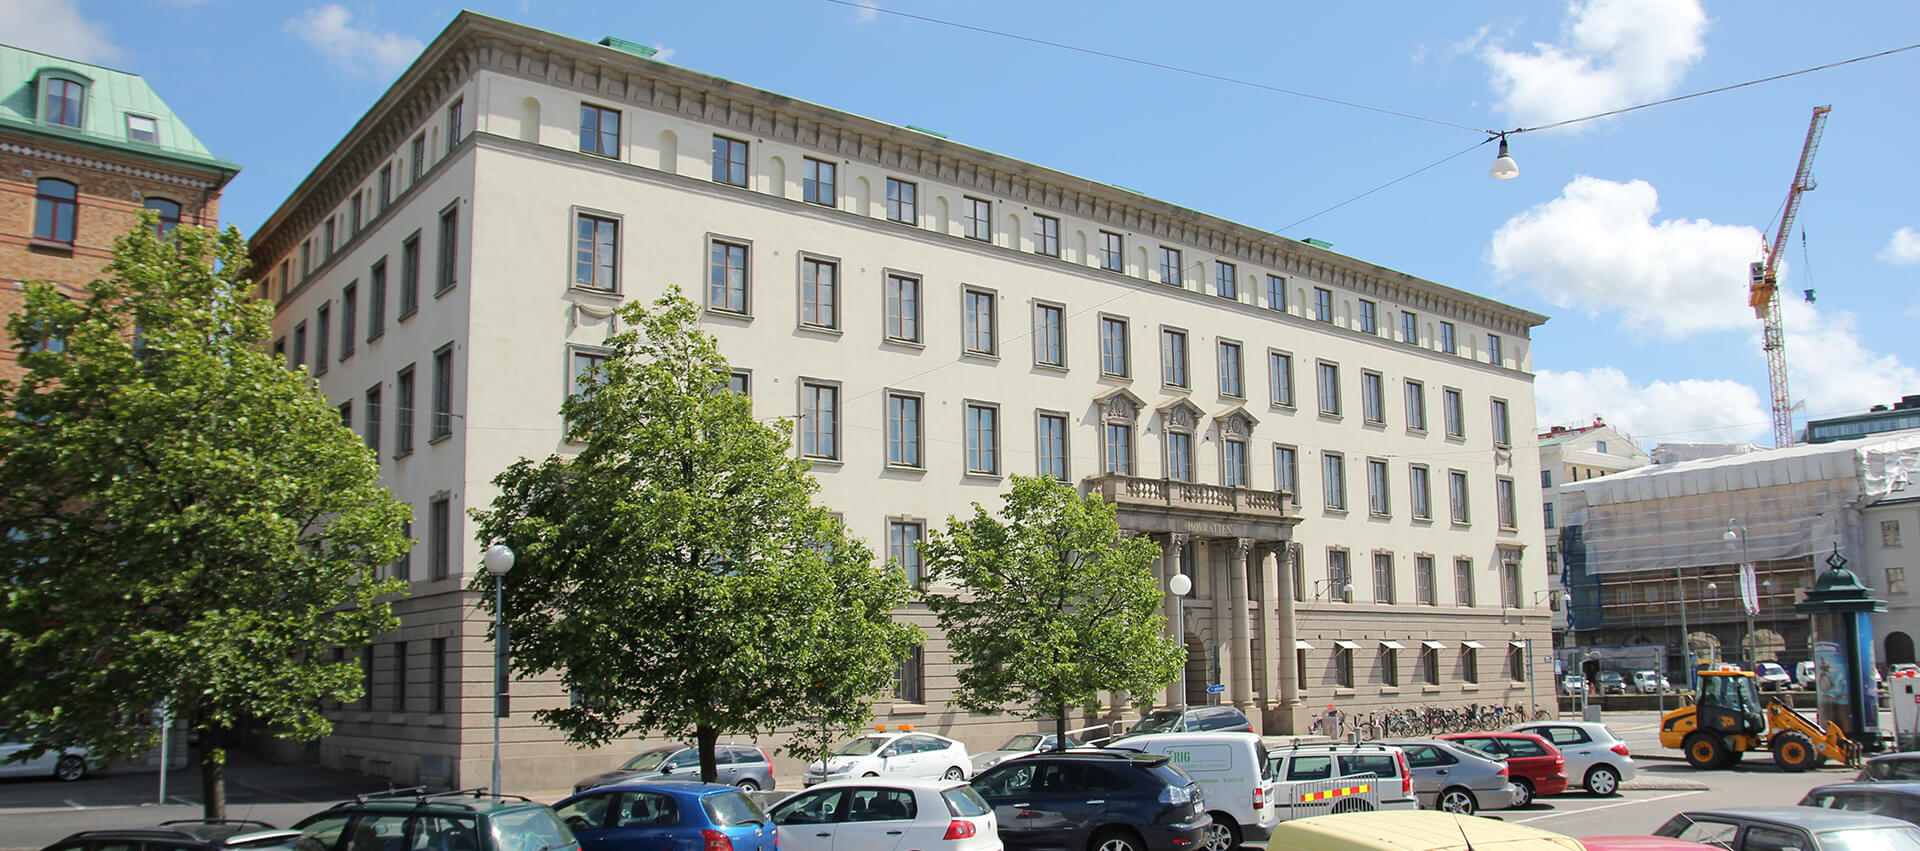 Hovrätten i Göteborg sitter i lokalerna på Packhusplatsen.